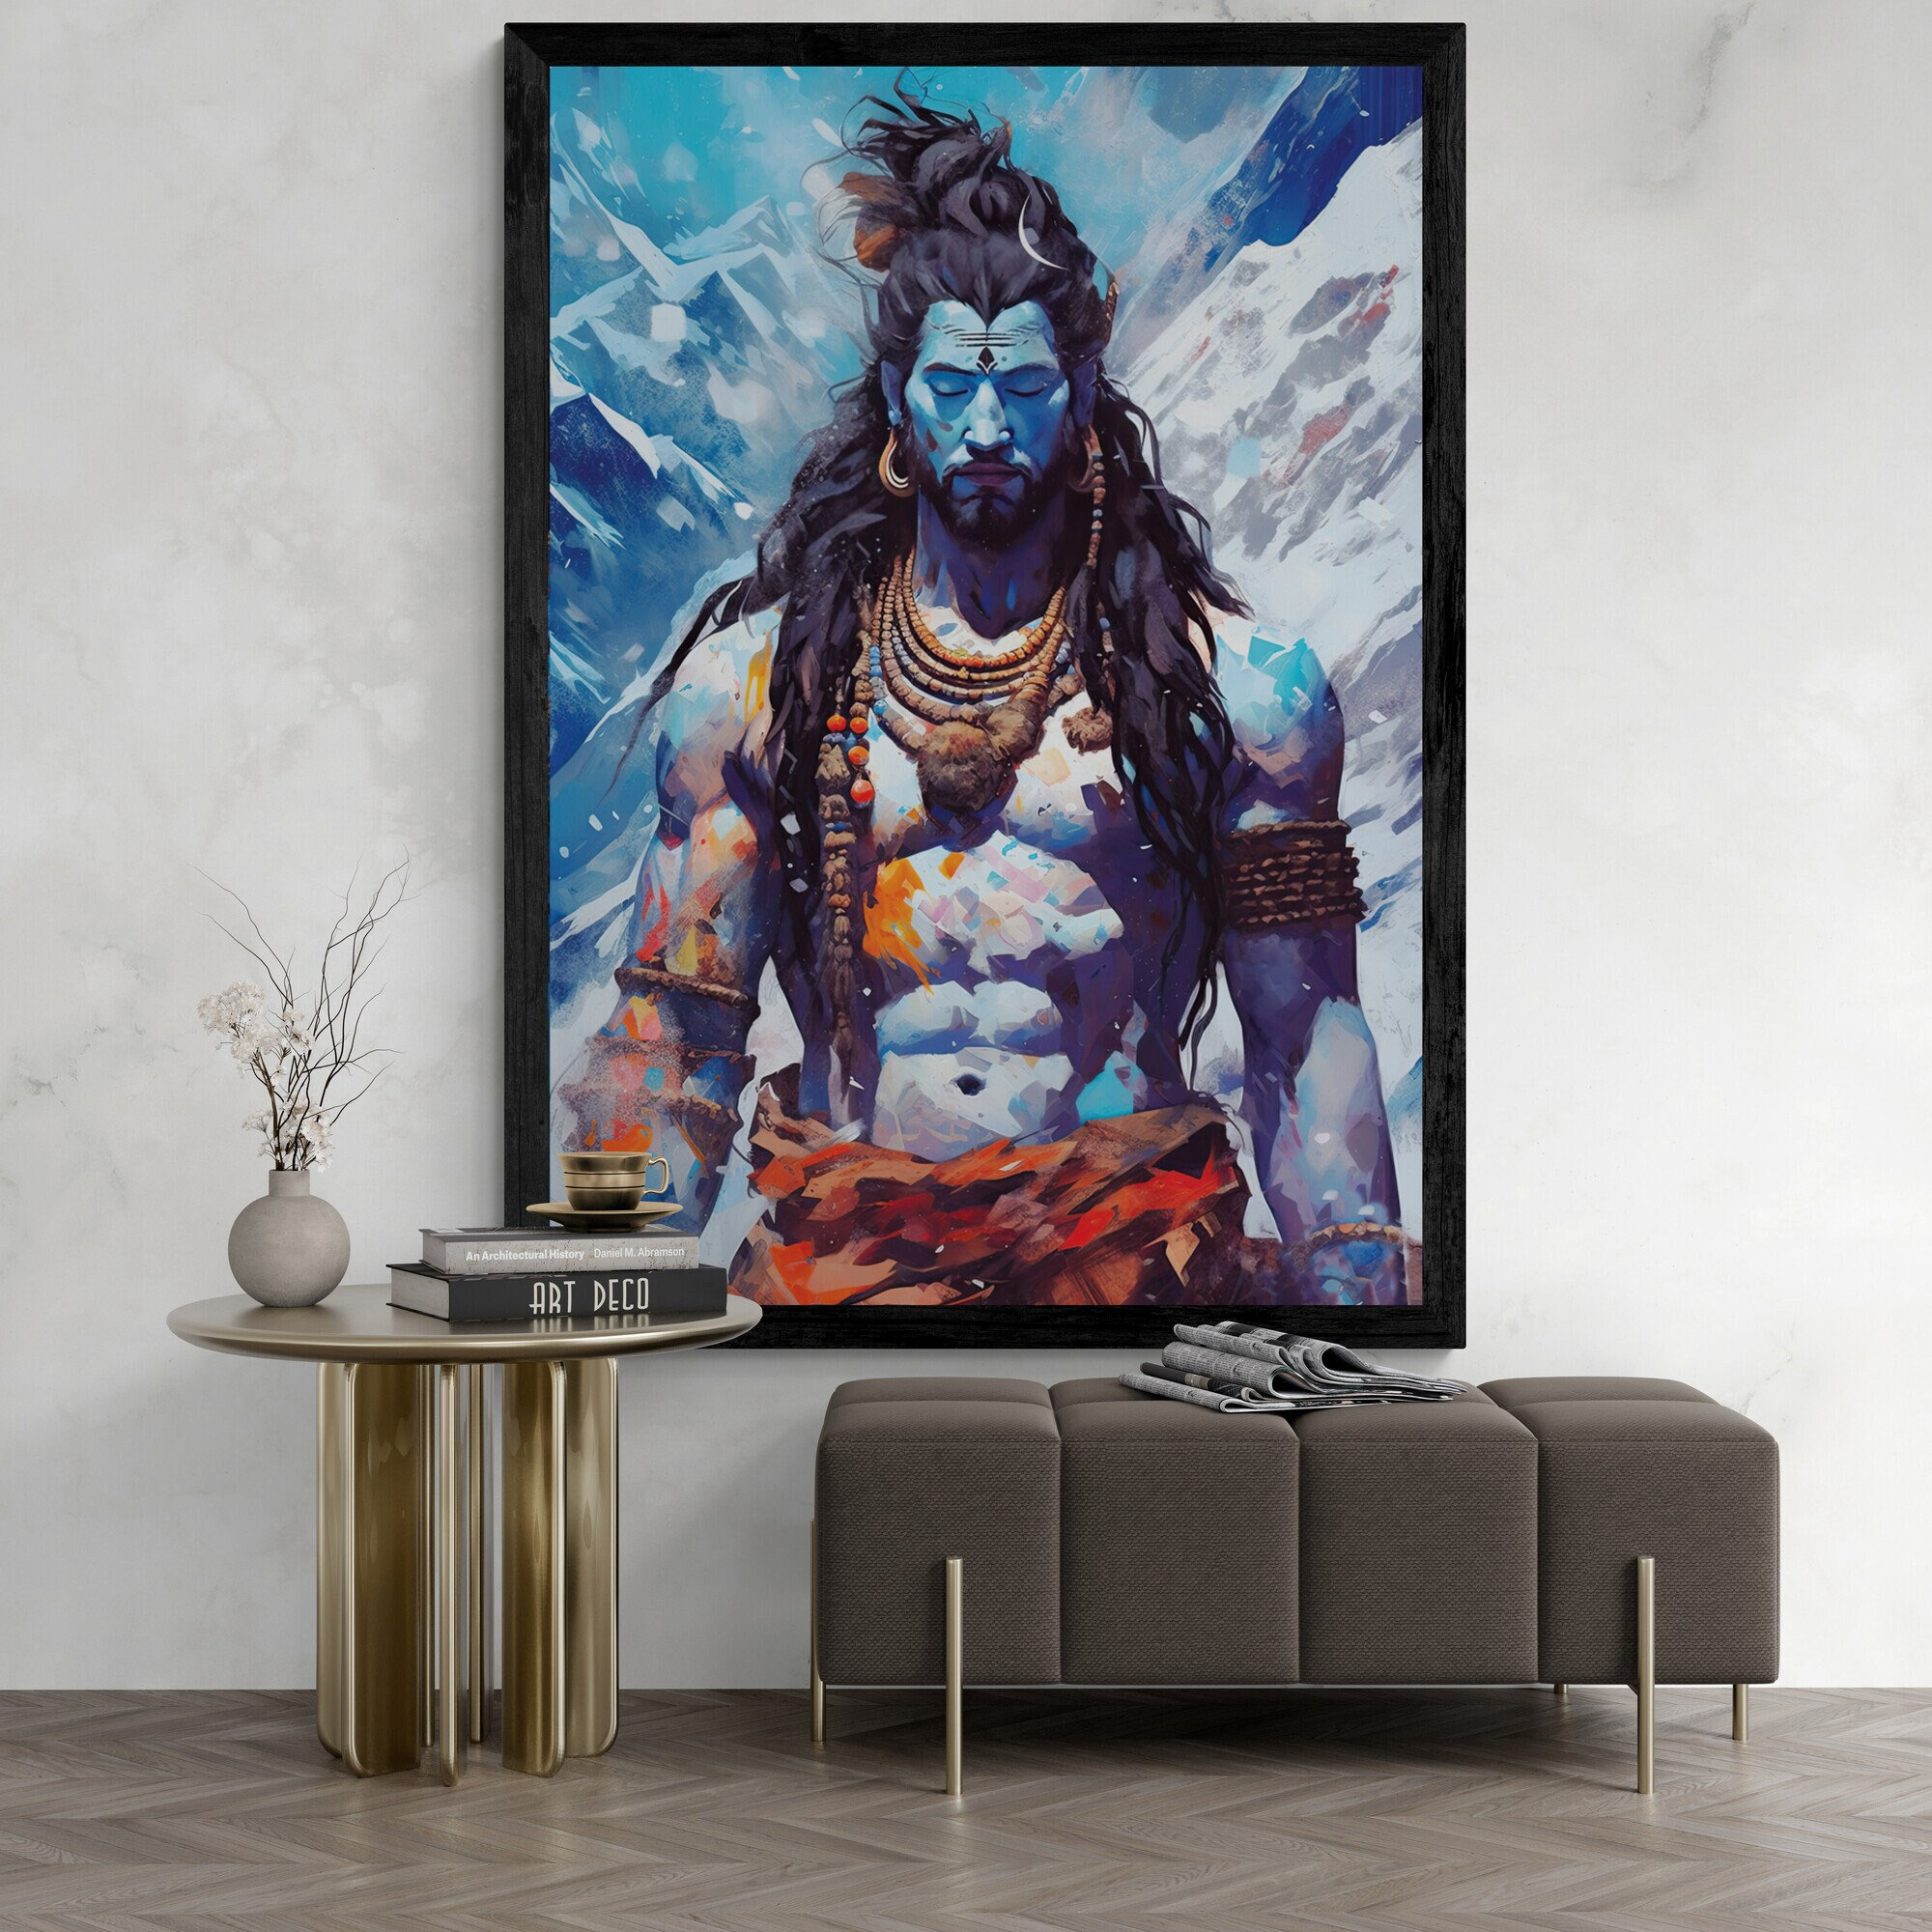 Shiva decalcomania da muro in vinile induismo dio indù India decorazioni  per la casa adesivi murales soggiorno rispettoso arte vinile Poster YT1383  - AliExpress